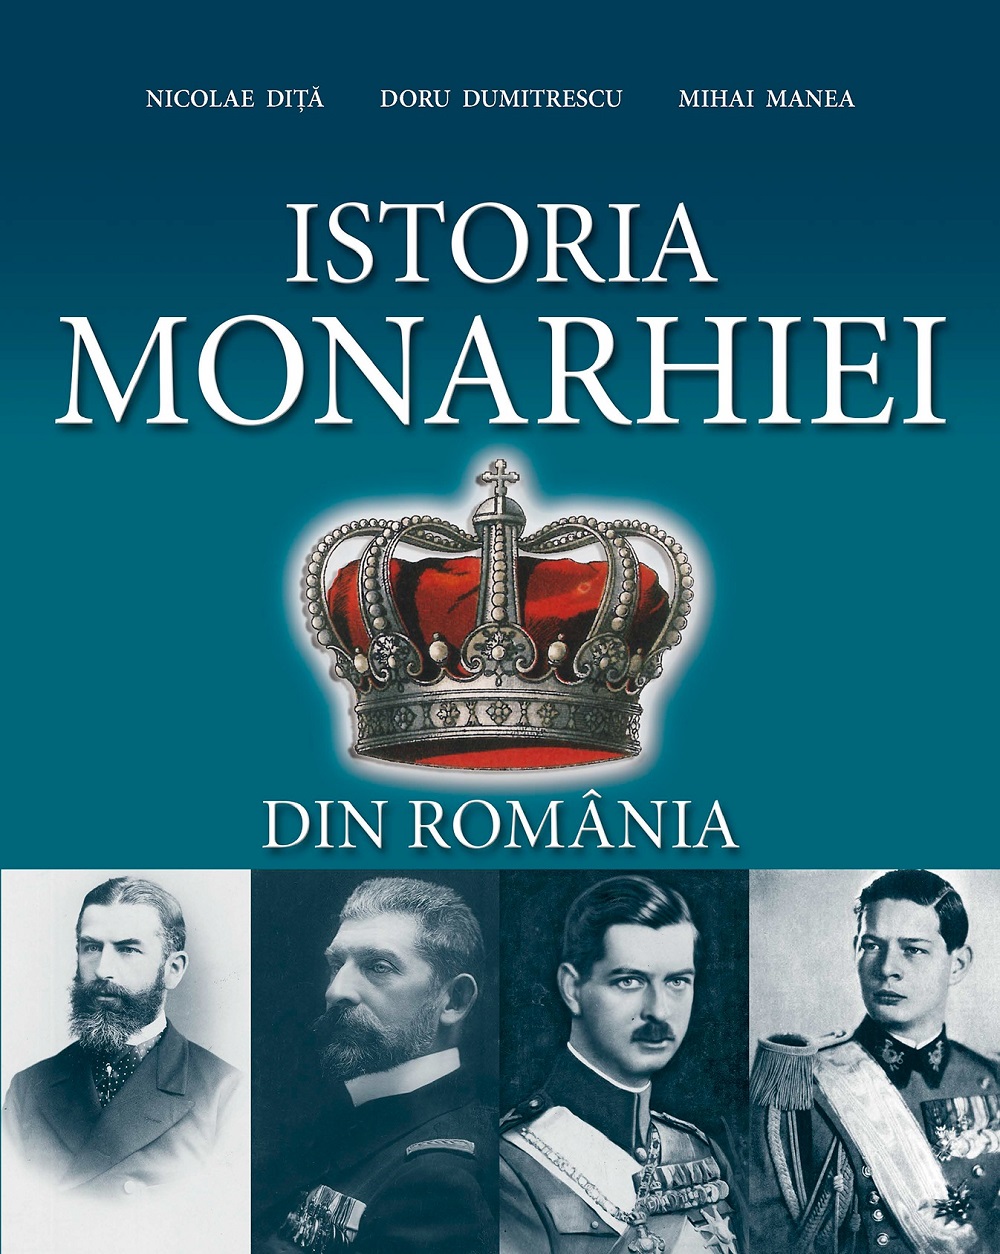 Istoria Monarhiei | Nicolae Dita, Doru Dumitrescu, Mihai Manea carturesti.ro poza bestsellers.ro